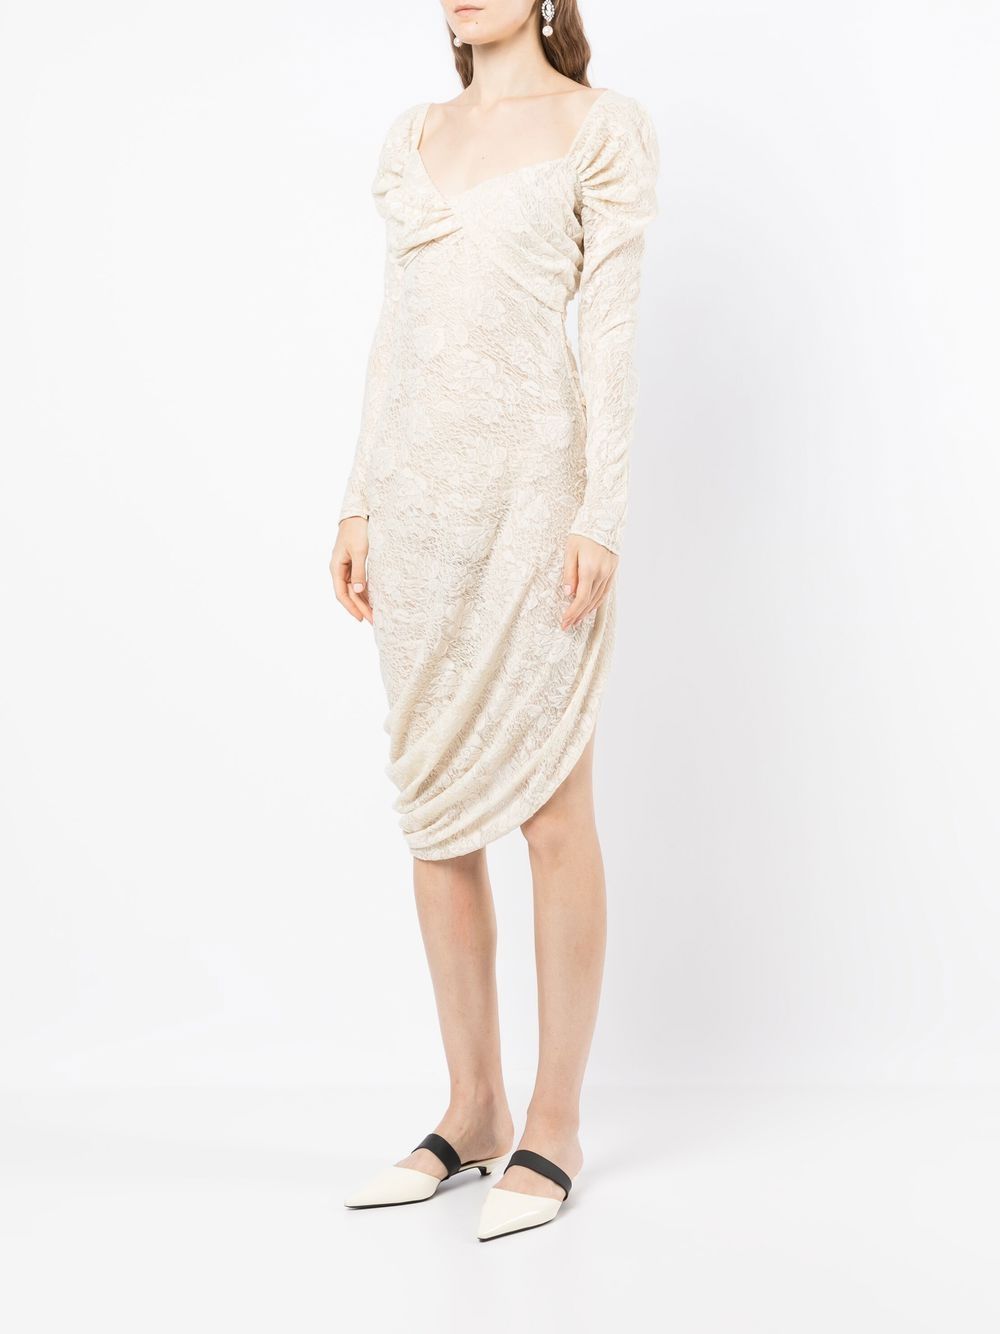 Yuhan Wang Lace Asymmetric long-sleeve Dress - Farfetch